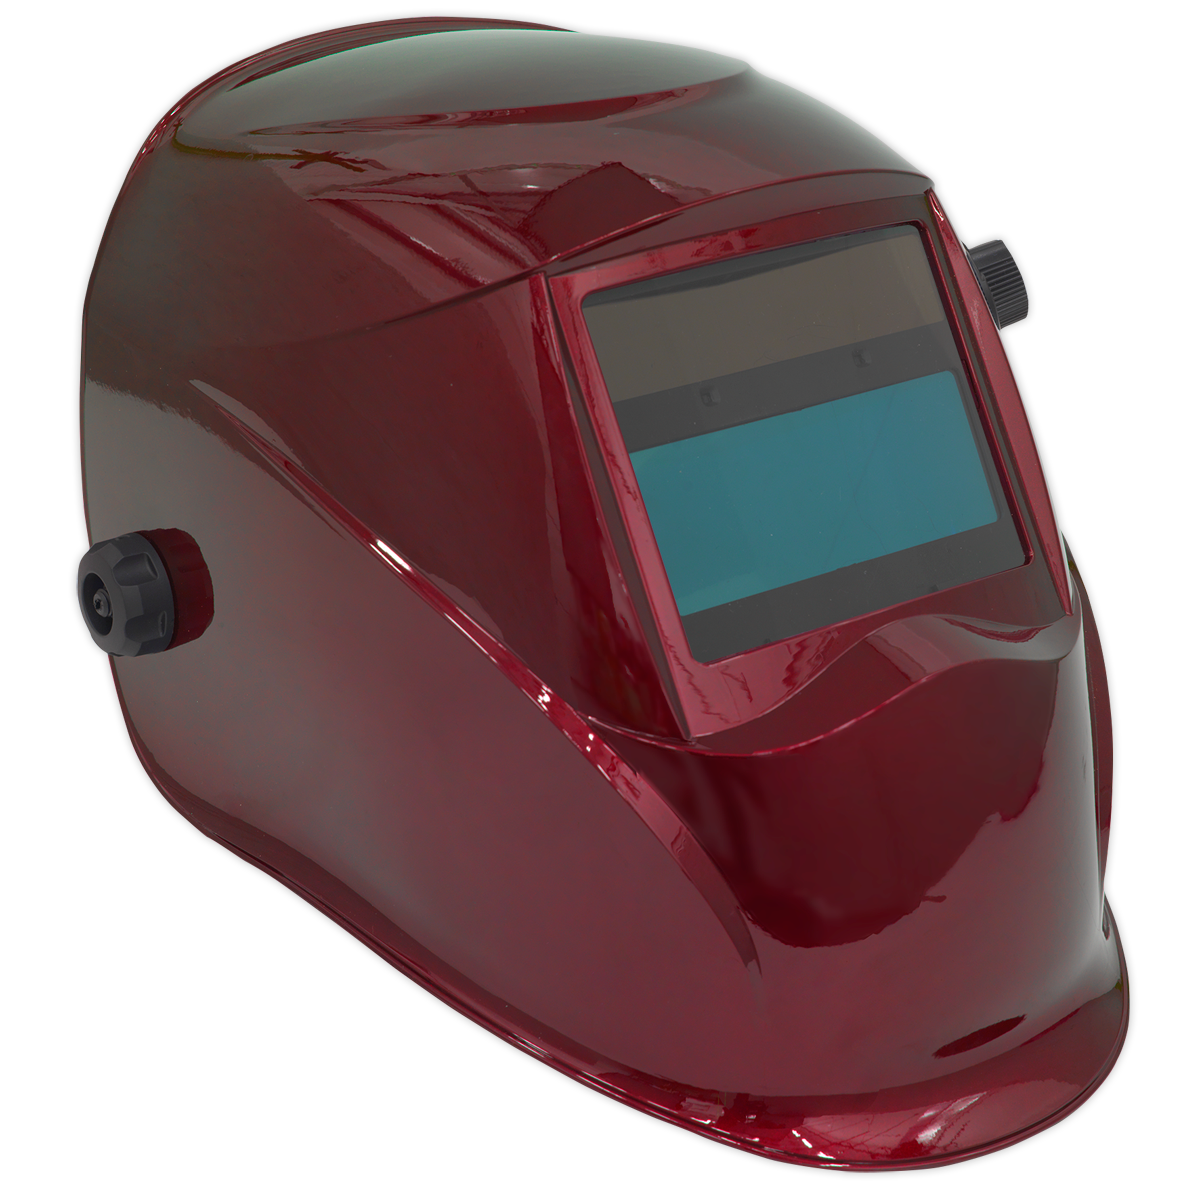 Welding Helmet Auto Darkening - Shade 9-13 - Red - PWH612 - Farming Parts